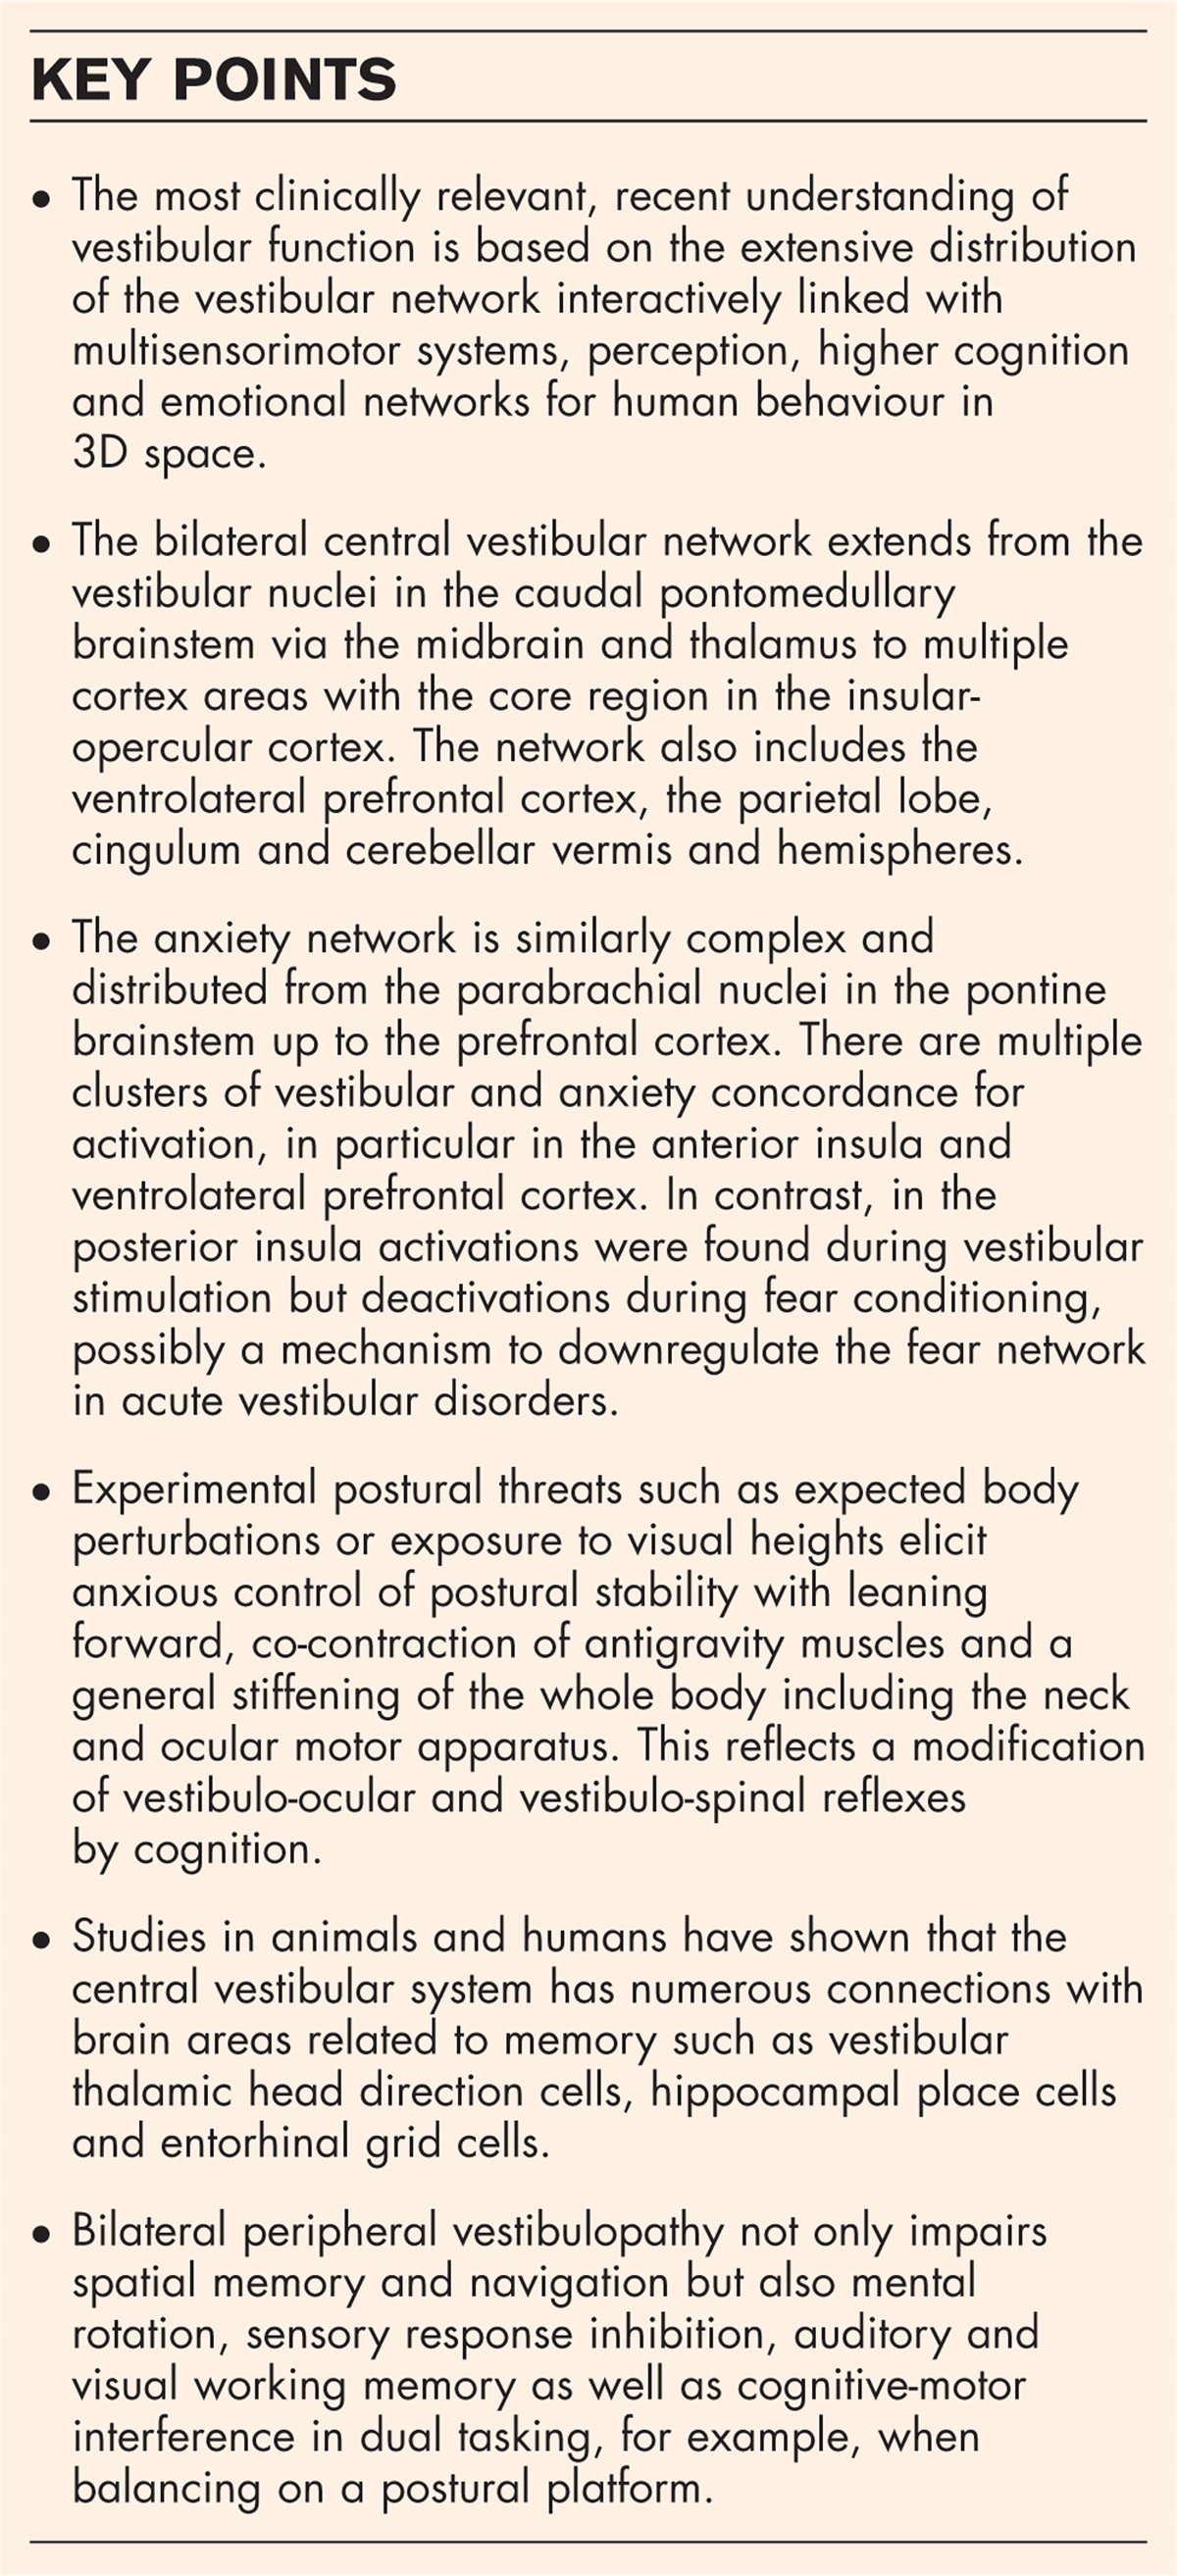 Central vestibular networking for sensorimotor control, cognition, and emotion